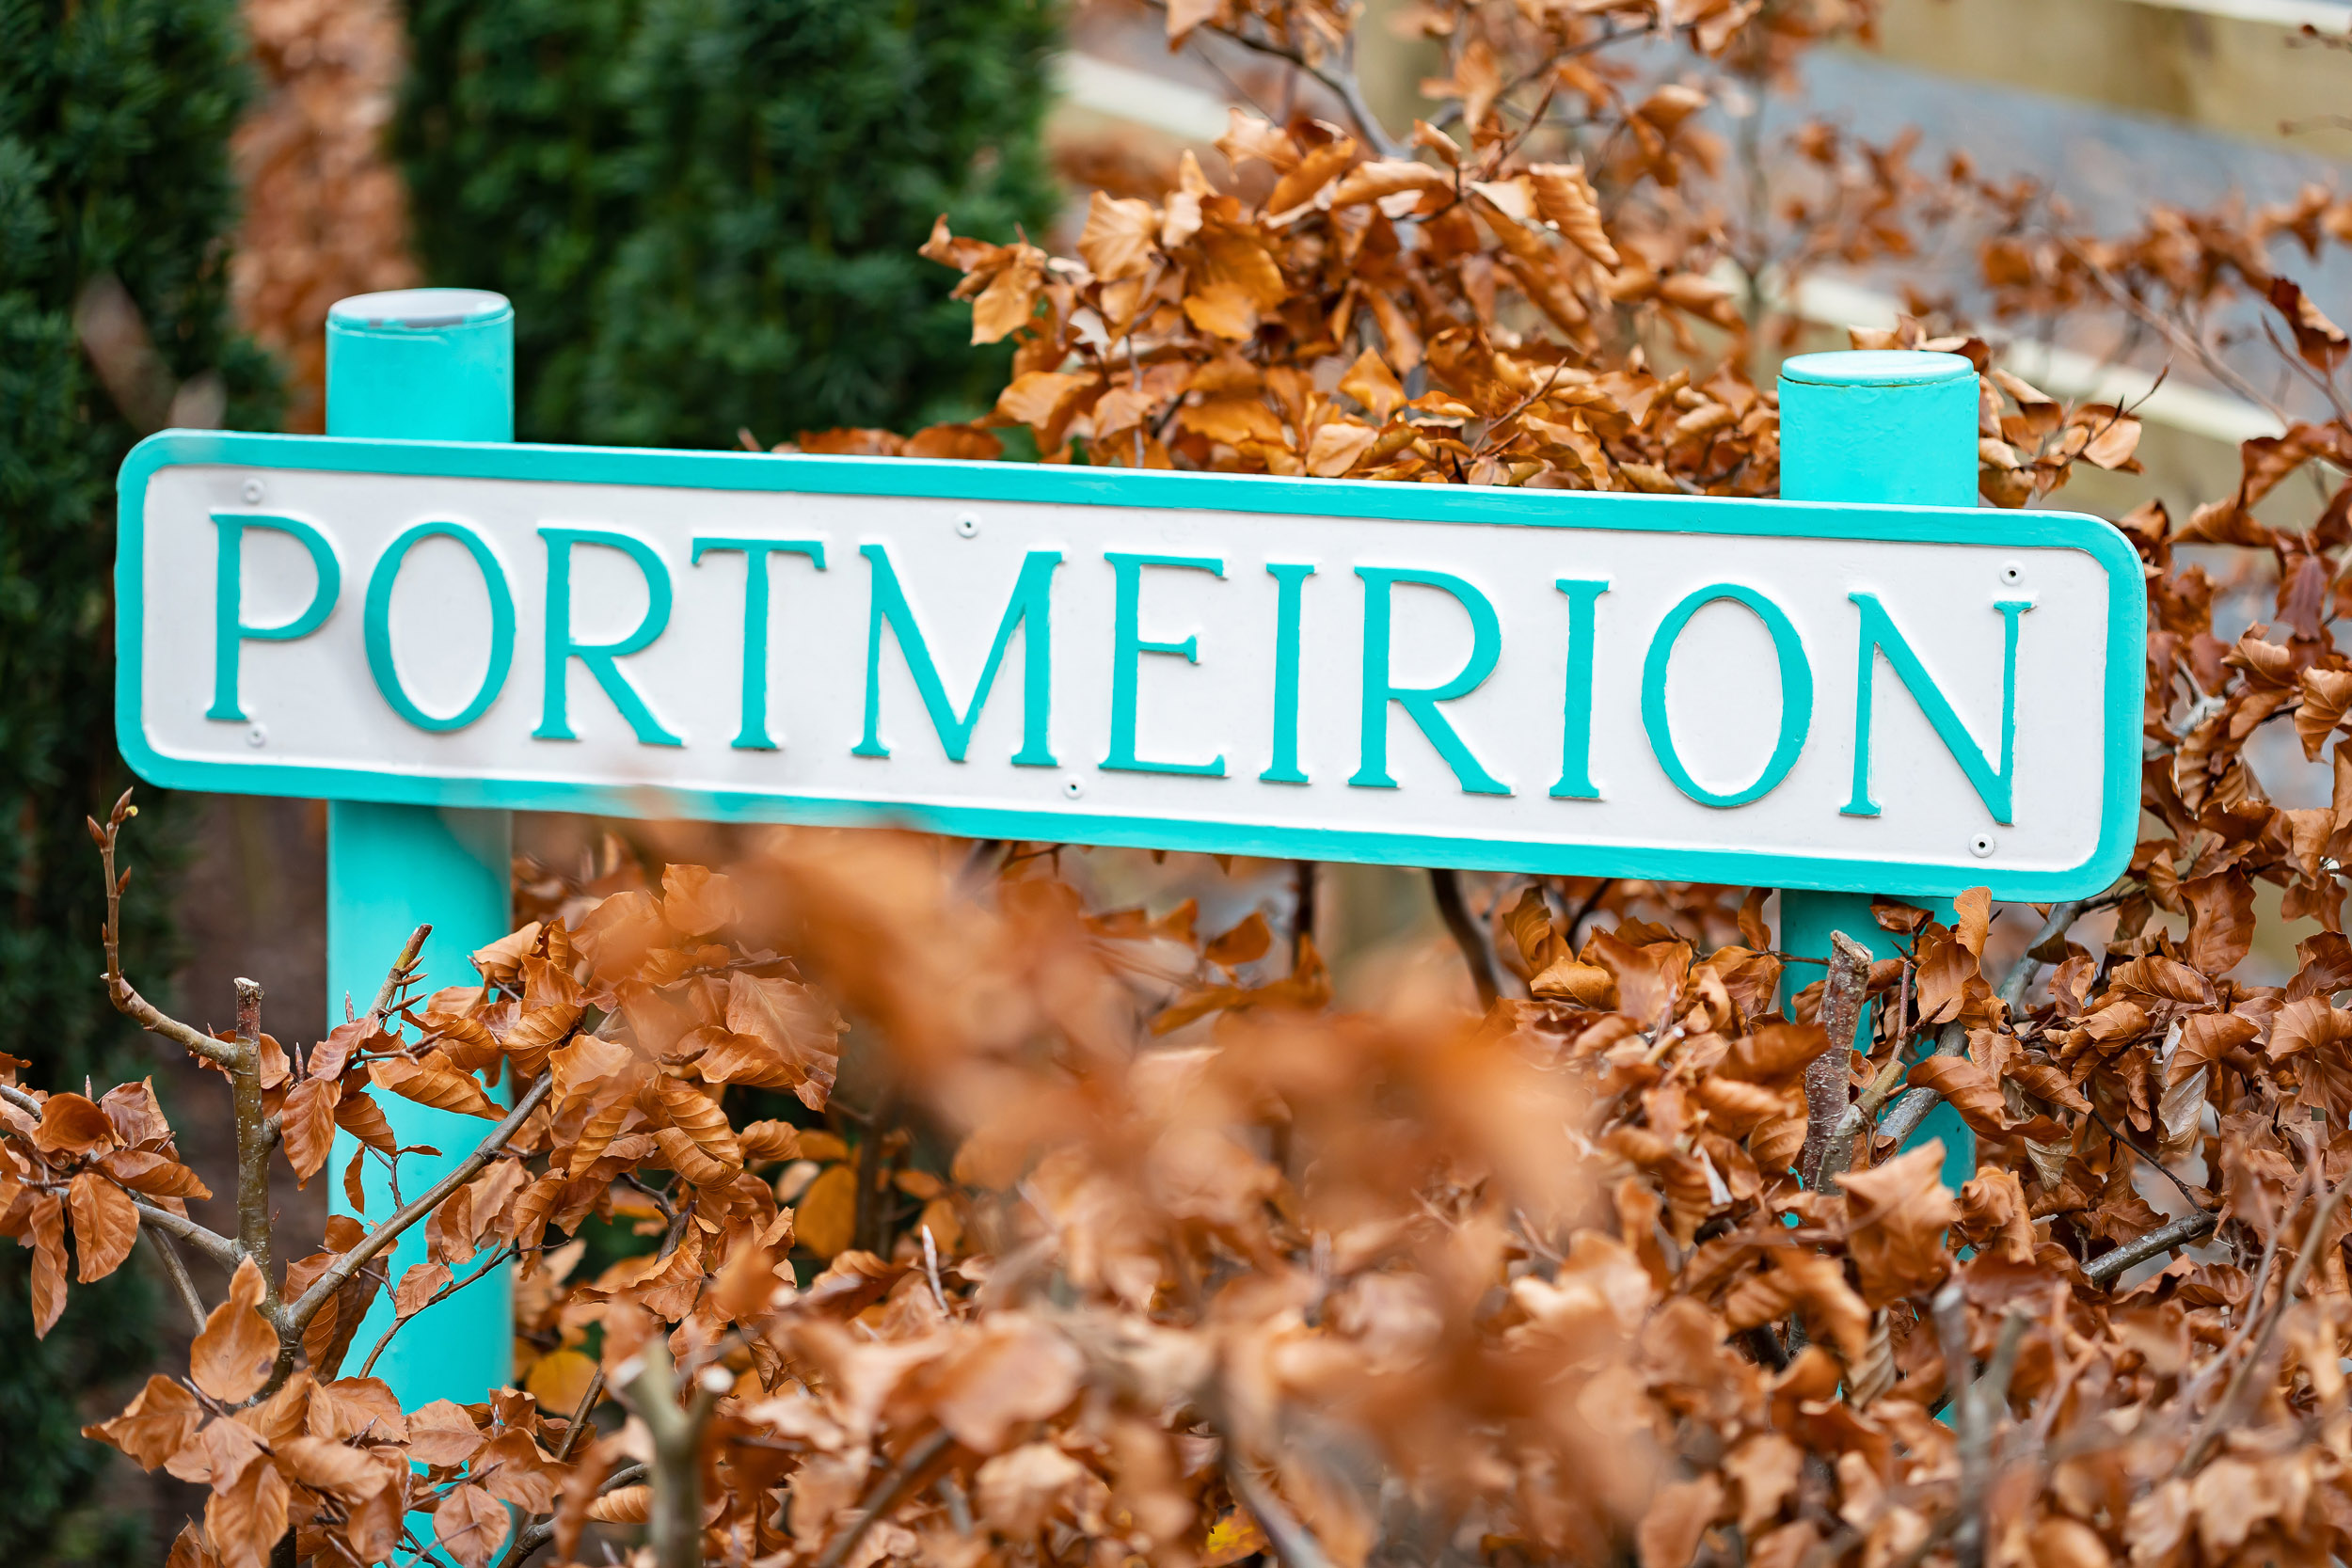 Portmeirion street sign